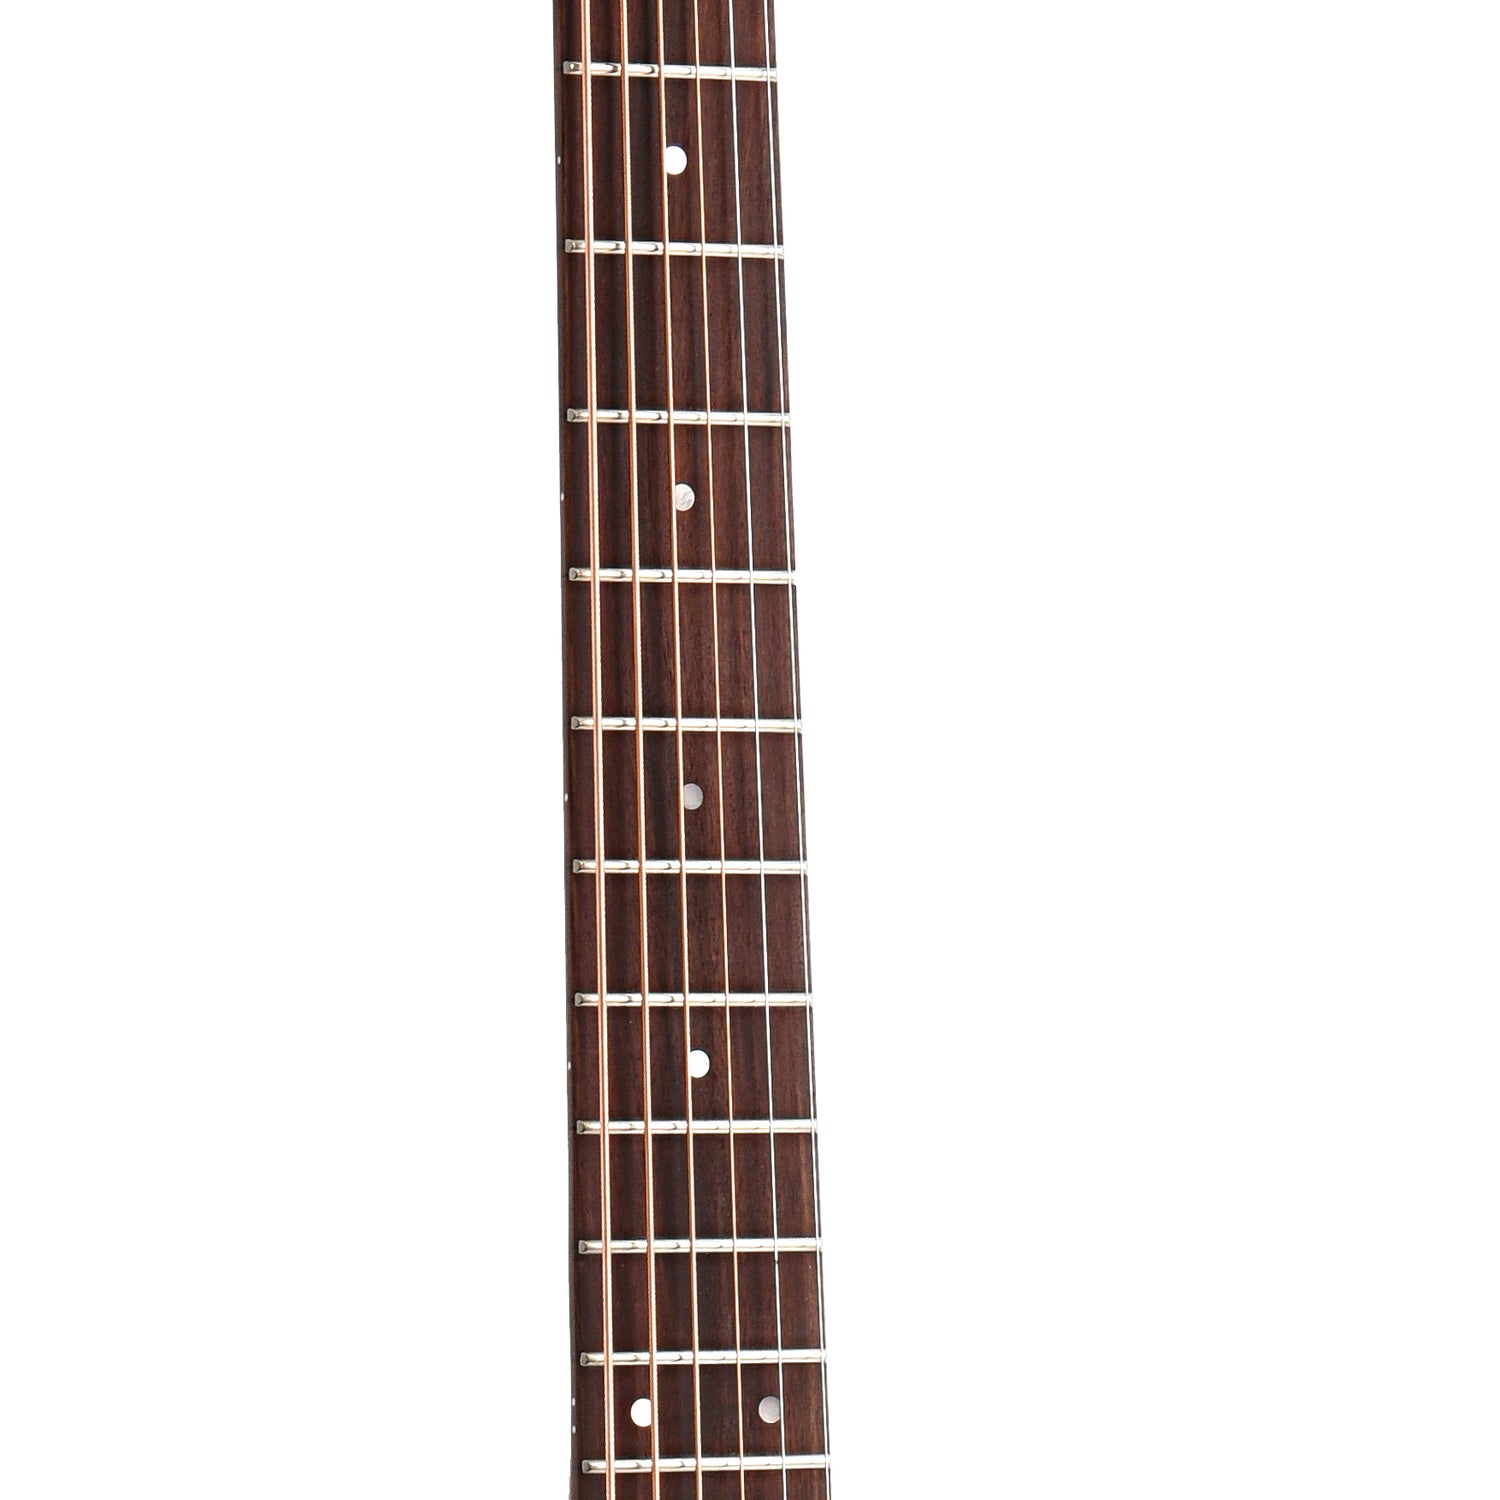 Fretboard of Guild Westerly BT-240E Baritone Guitar